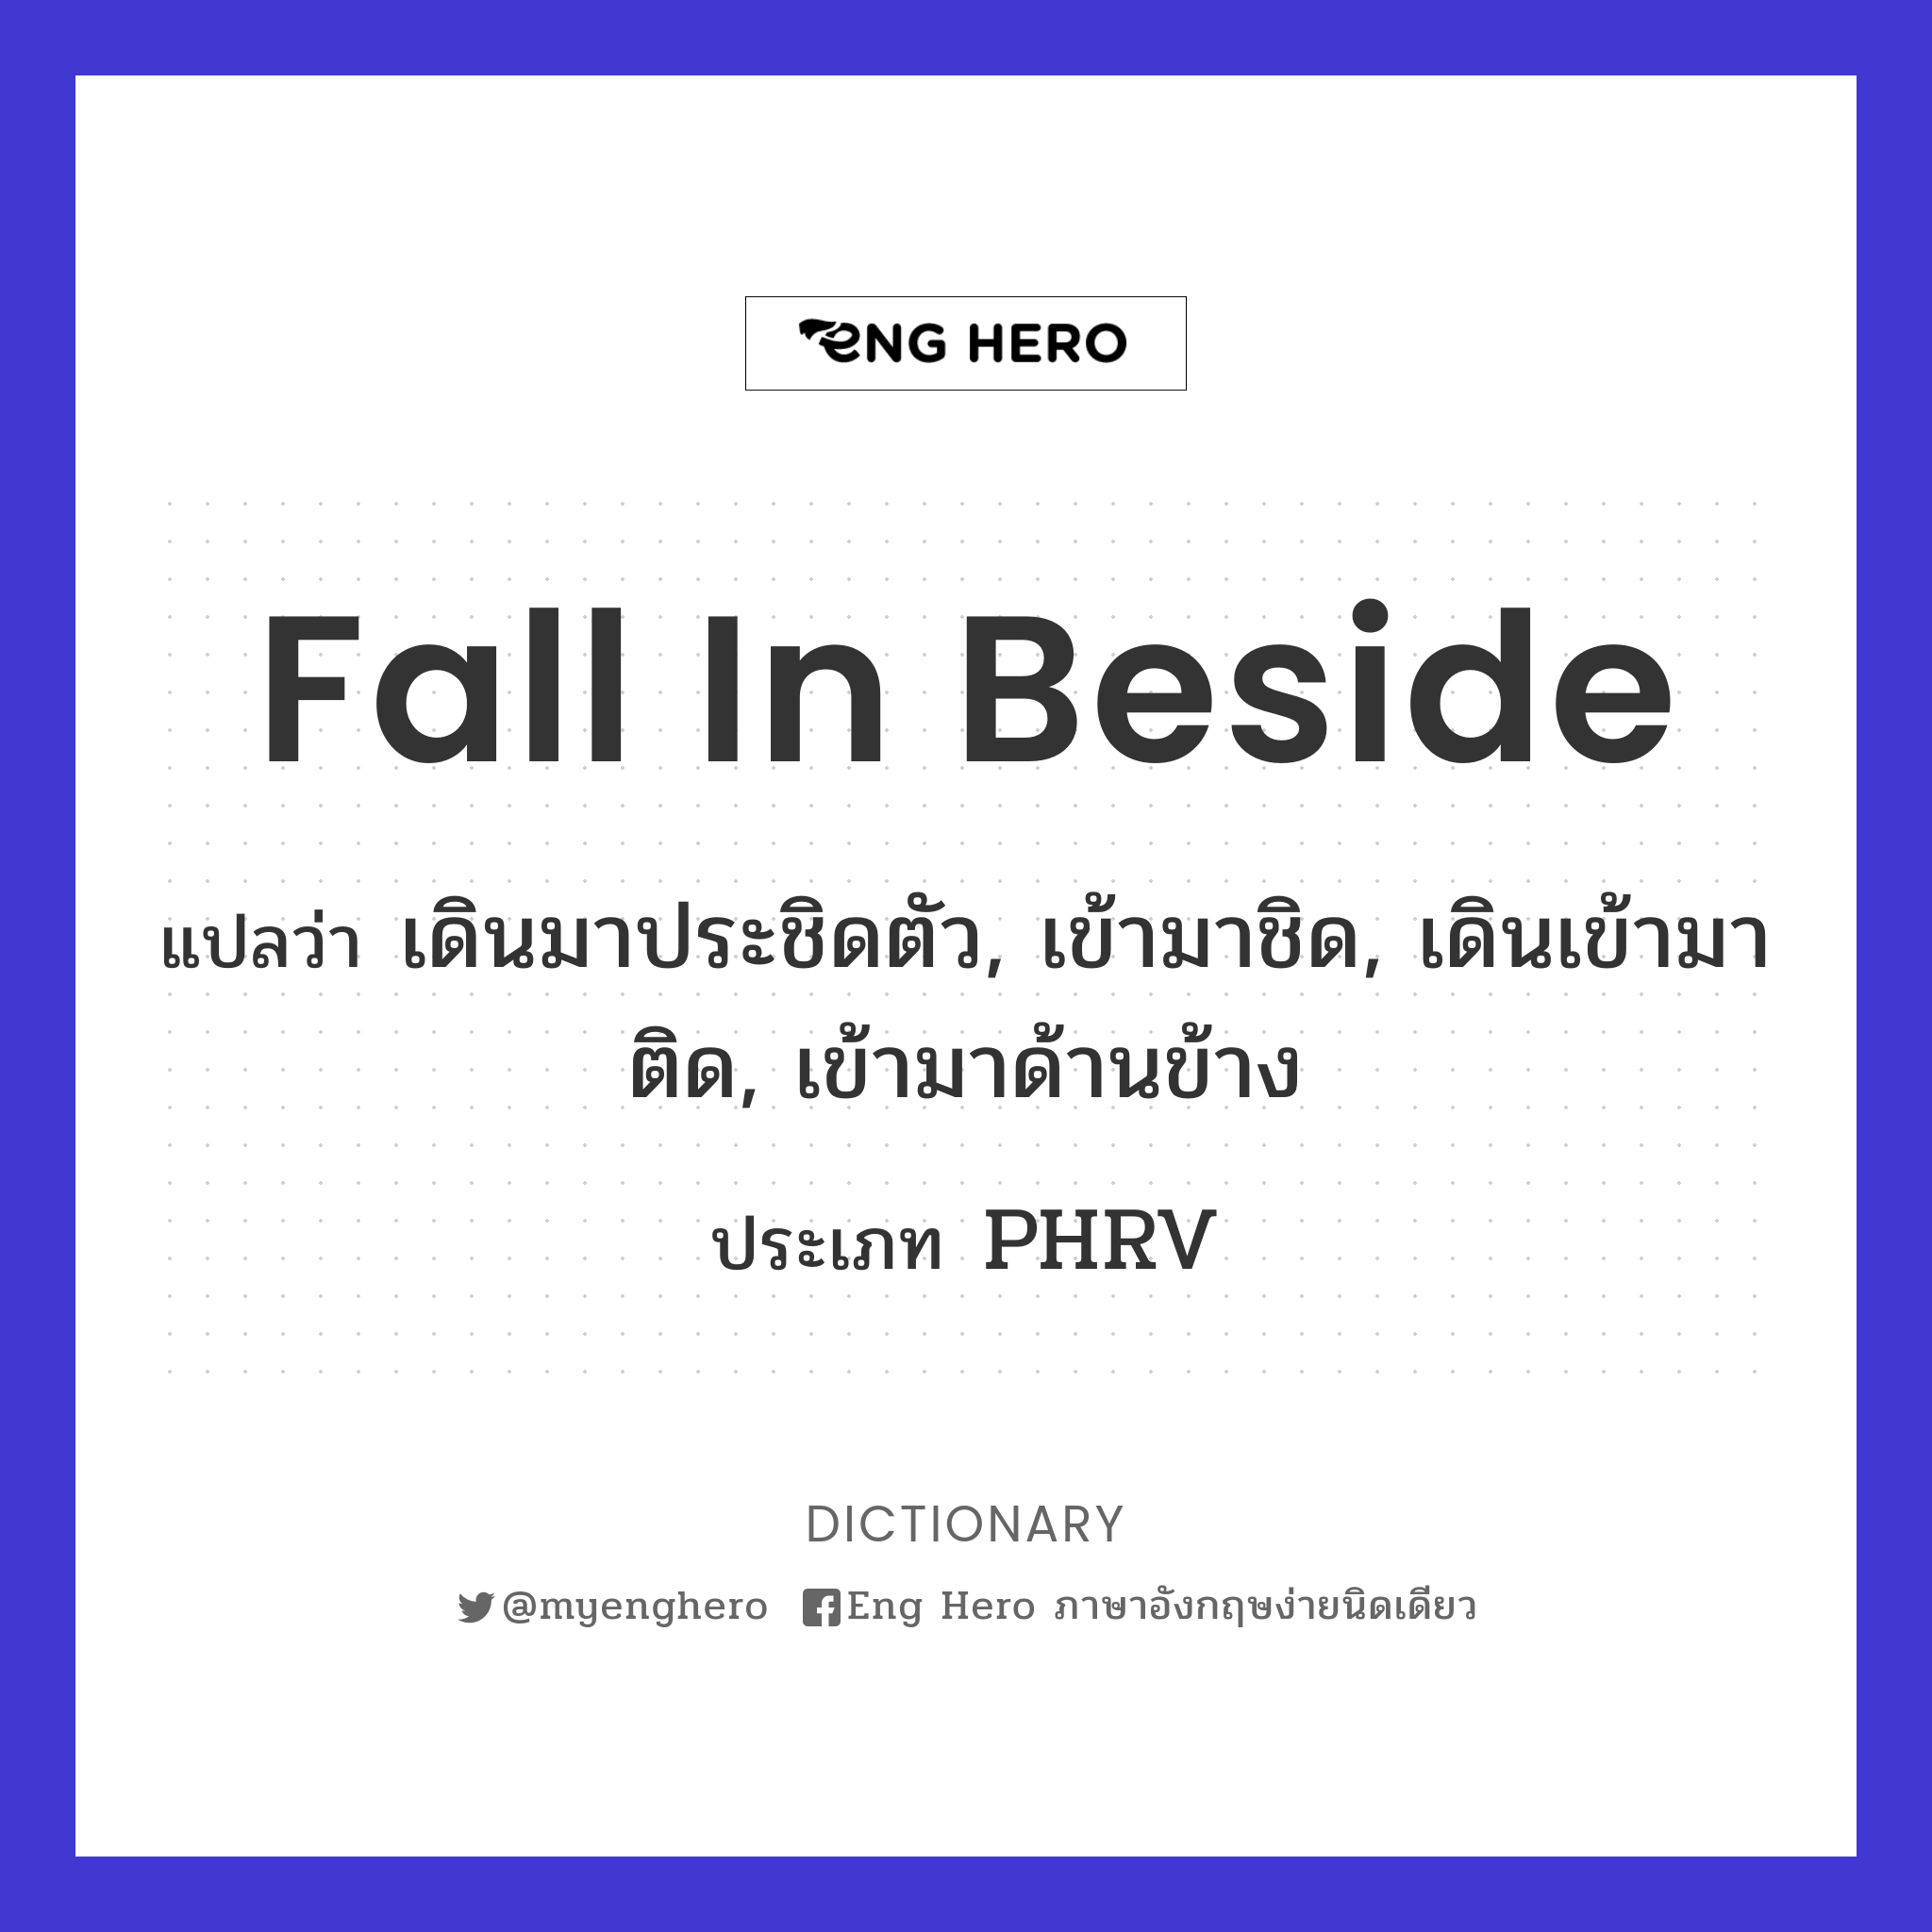 fall in beside